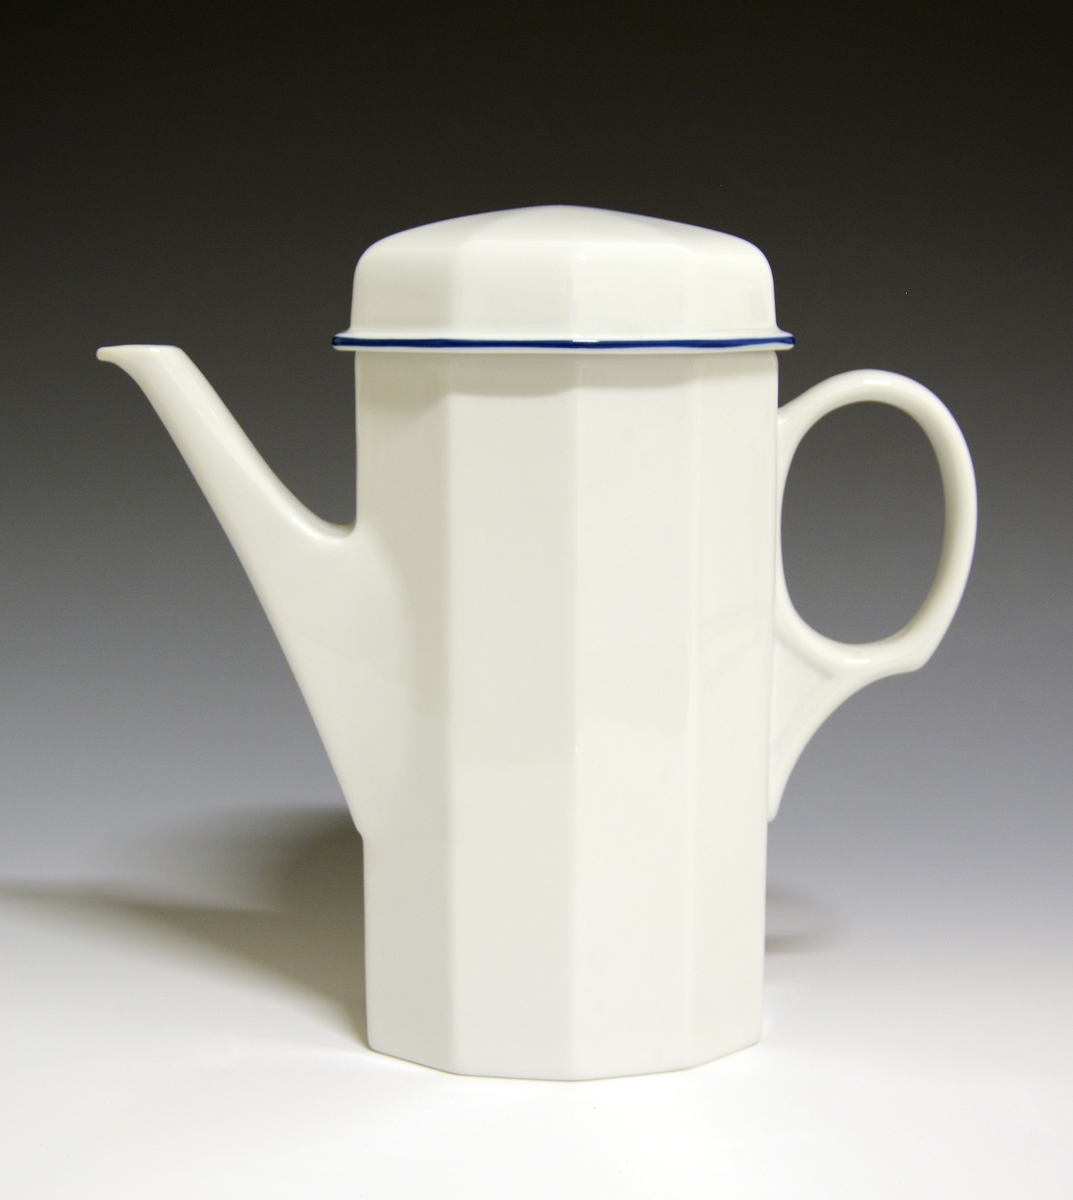 Mangekantet kaffekanne med lokk, av porselen. Hvit glasur. Dekorert med en enkel blå strek langs lokkets utkraging.
Modell: Octavia, tegnet av Grete Rønning i 1977.
Dekor: Blå strek.